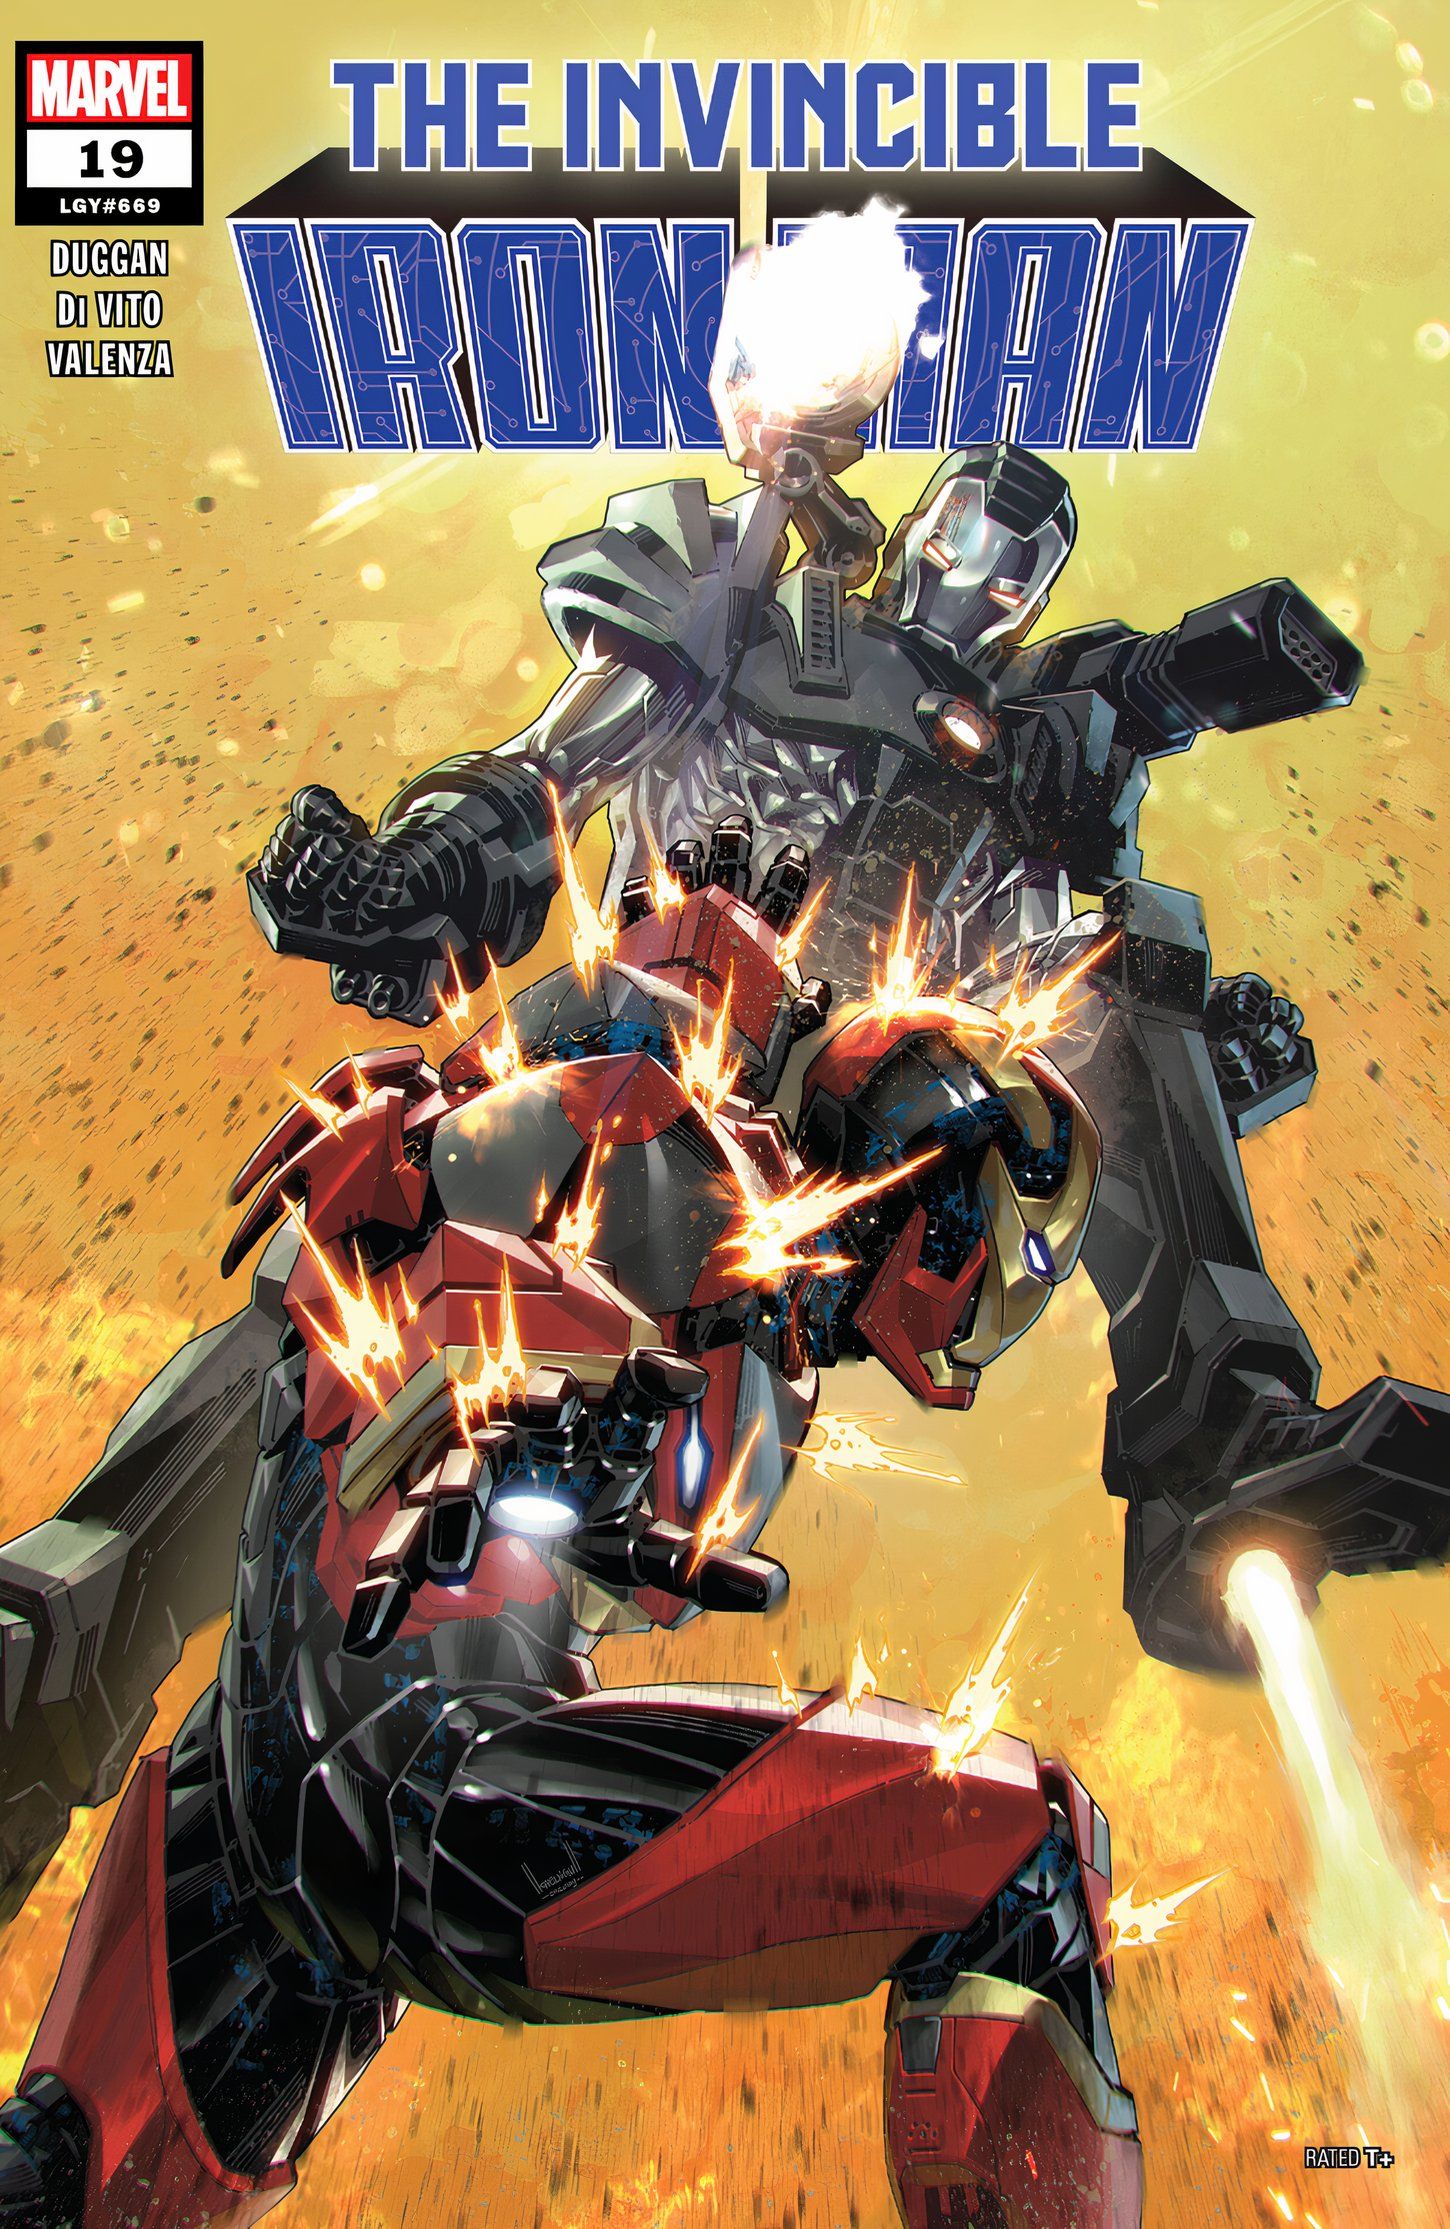 Capa de Invincible Iron Man #19, War Machine e Iron Man lutando. 